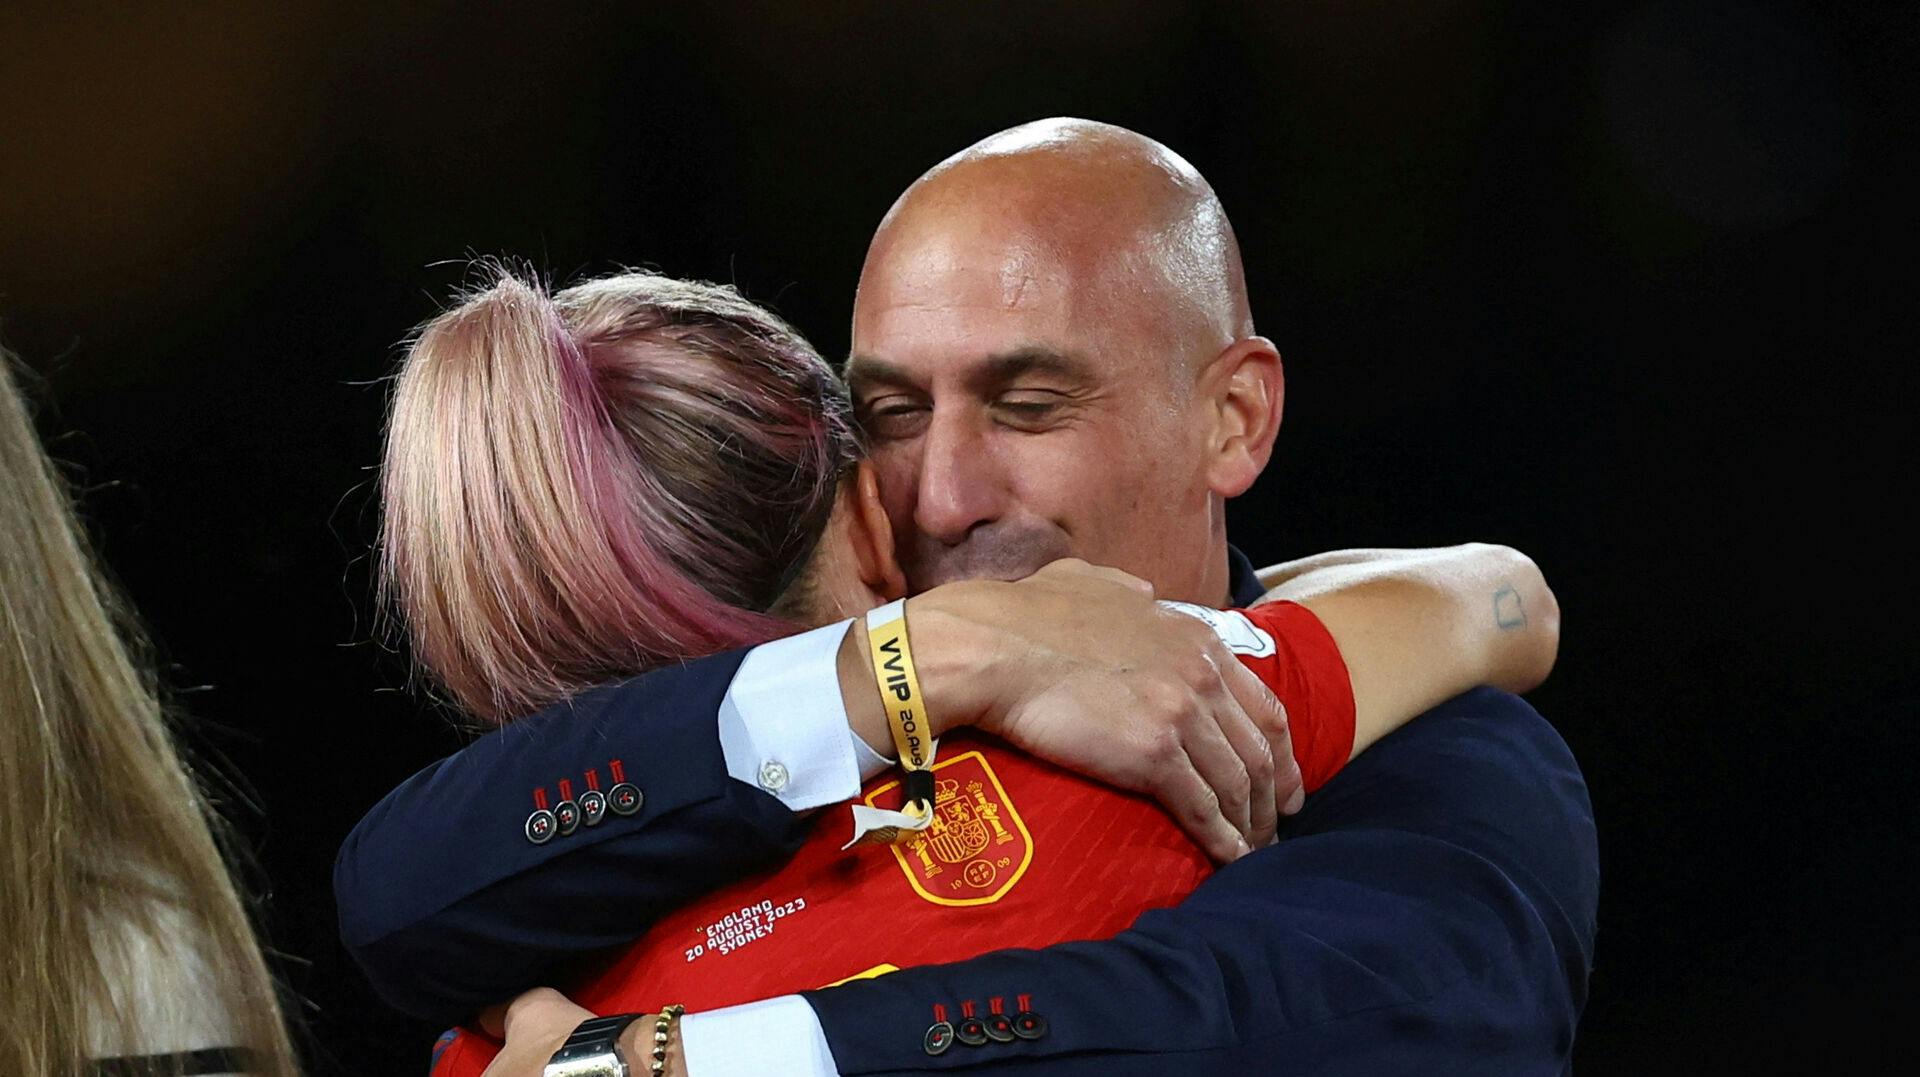 Luis Rubiales har trukket sig som præsident for Det Spanske Fodboldforbund, efter at han kyssede den spanske spiller Jennifer Hermoso på munden i forbindelse med fejringen af VM-guldet.